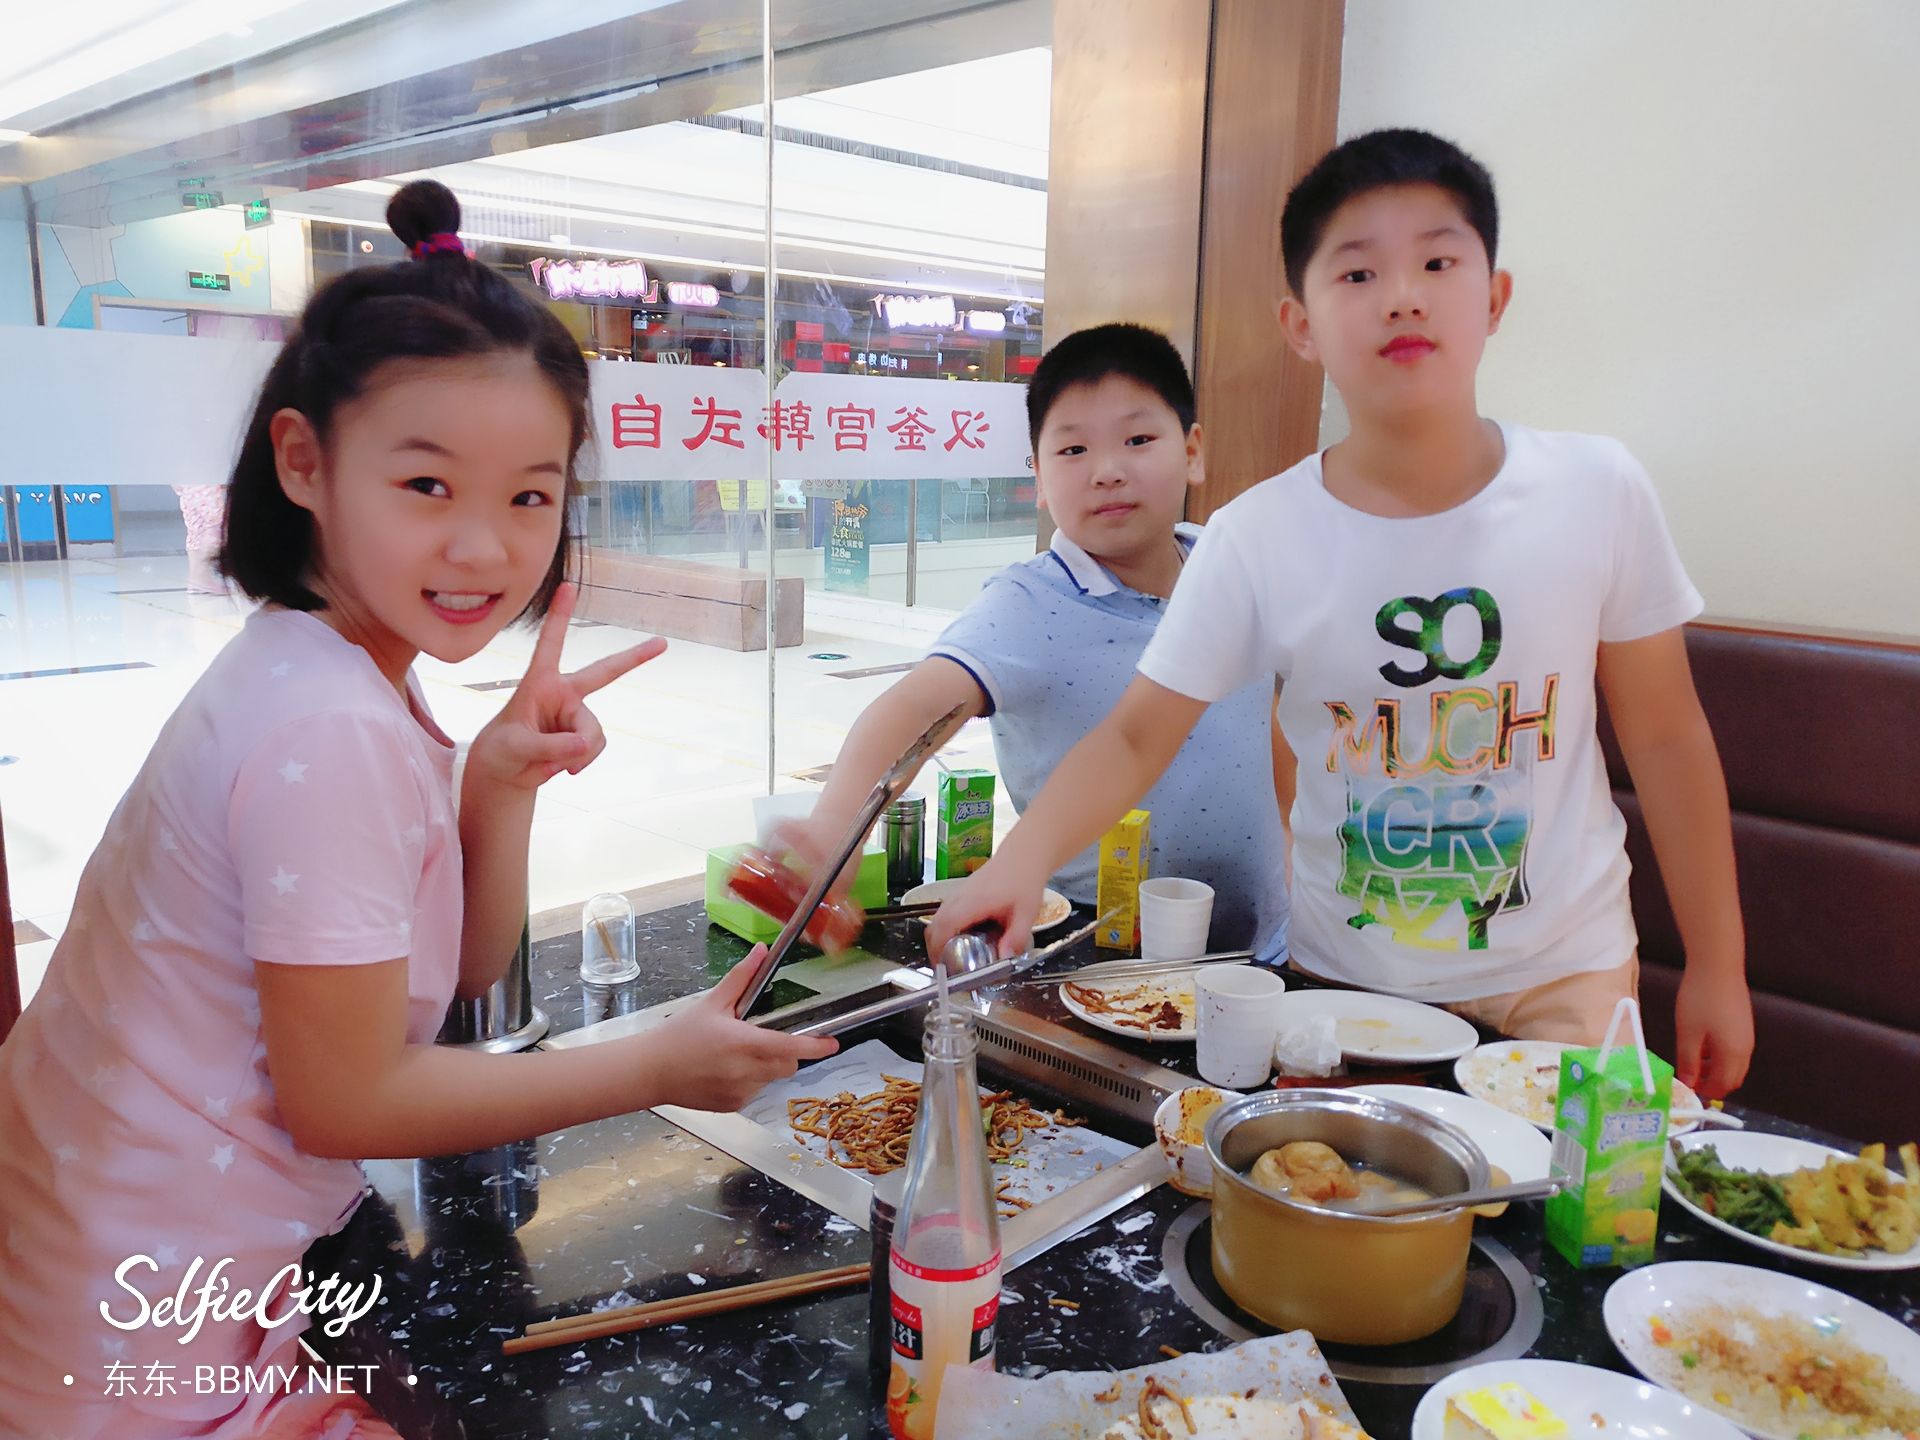 金东浩成长日记和好朋友一起吃自助餐照片SelfieCity_20210917100844_org.jpg